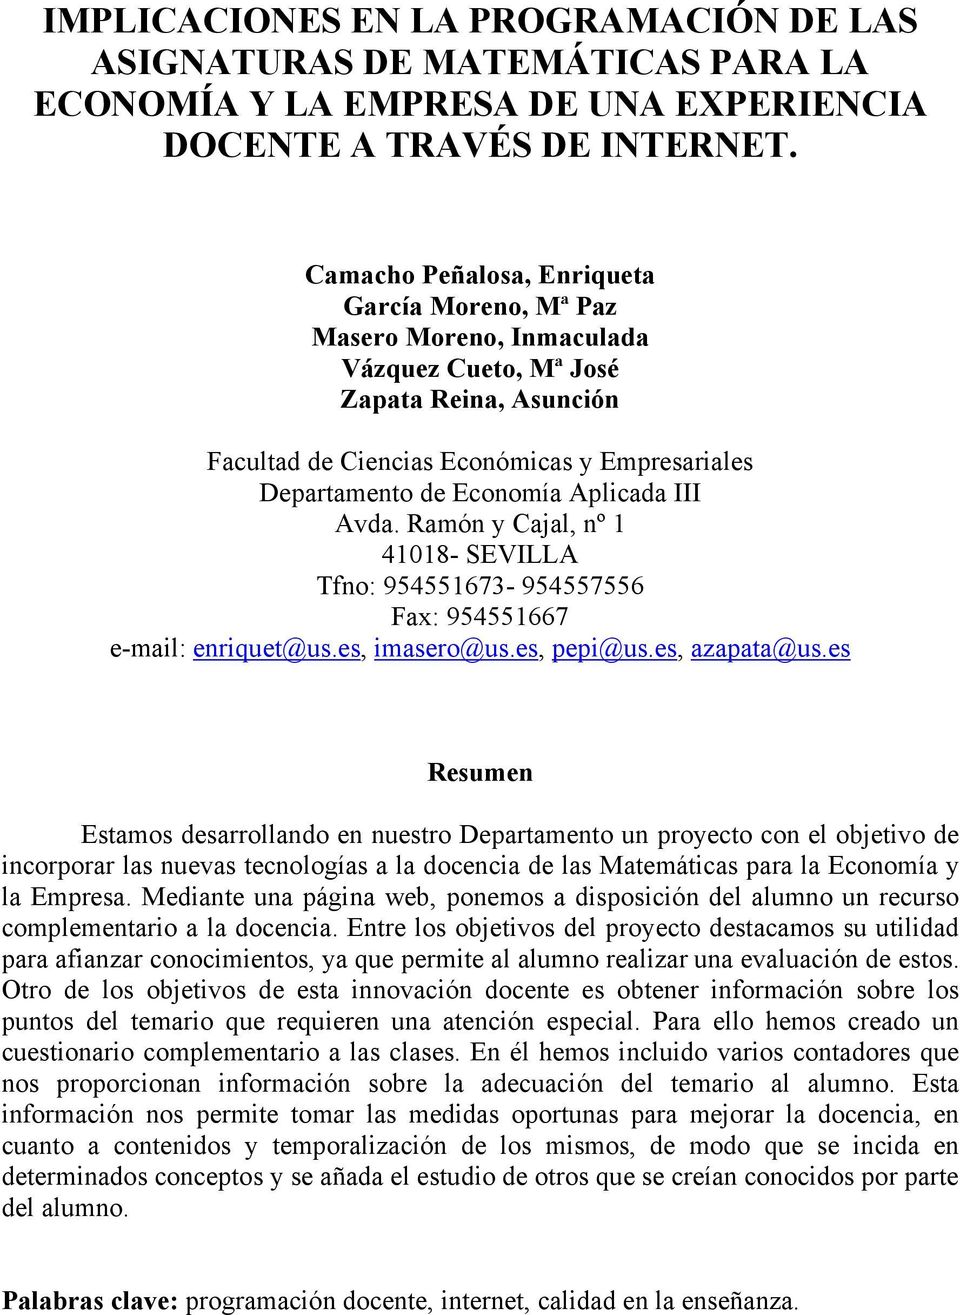 Aplicada III Avda. Ramón y Cajal, nº 1 41018- SEVILLA Tfno: 954551673-954557556 Fax: 954551667 e-mail: enriquet@us.es, imasero@us.es, pepi@us.es, azapata@us.